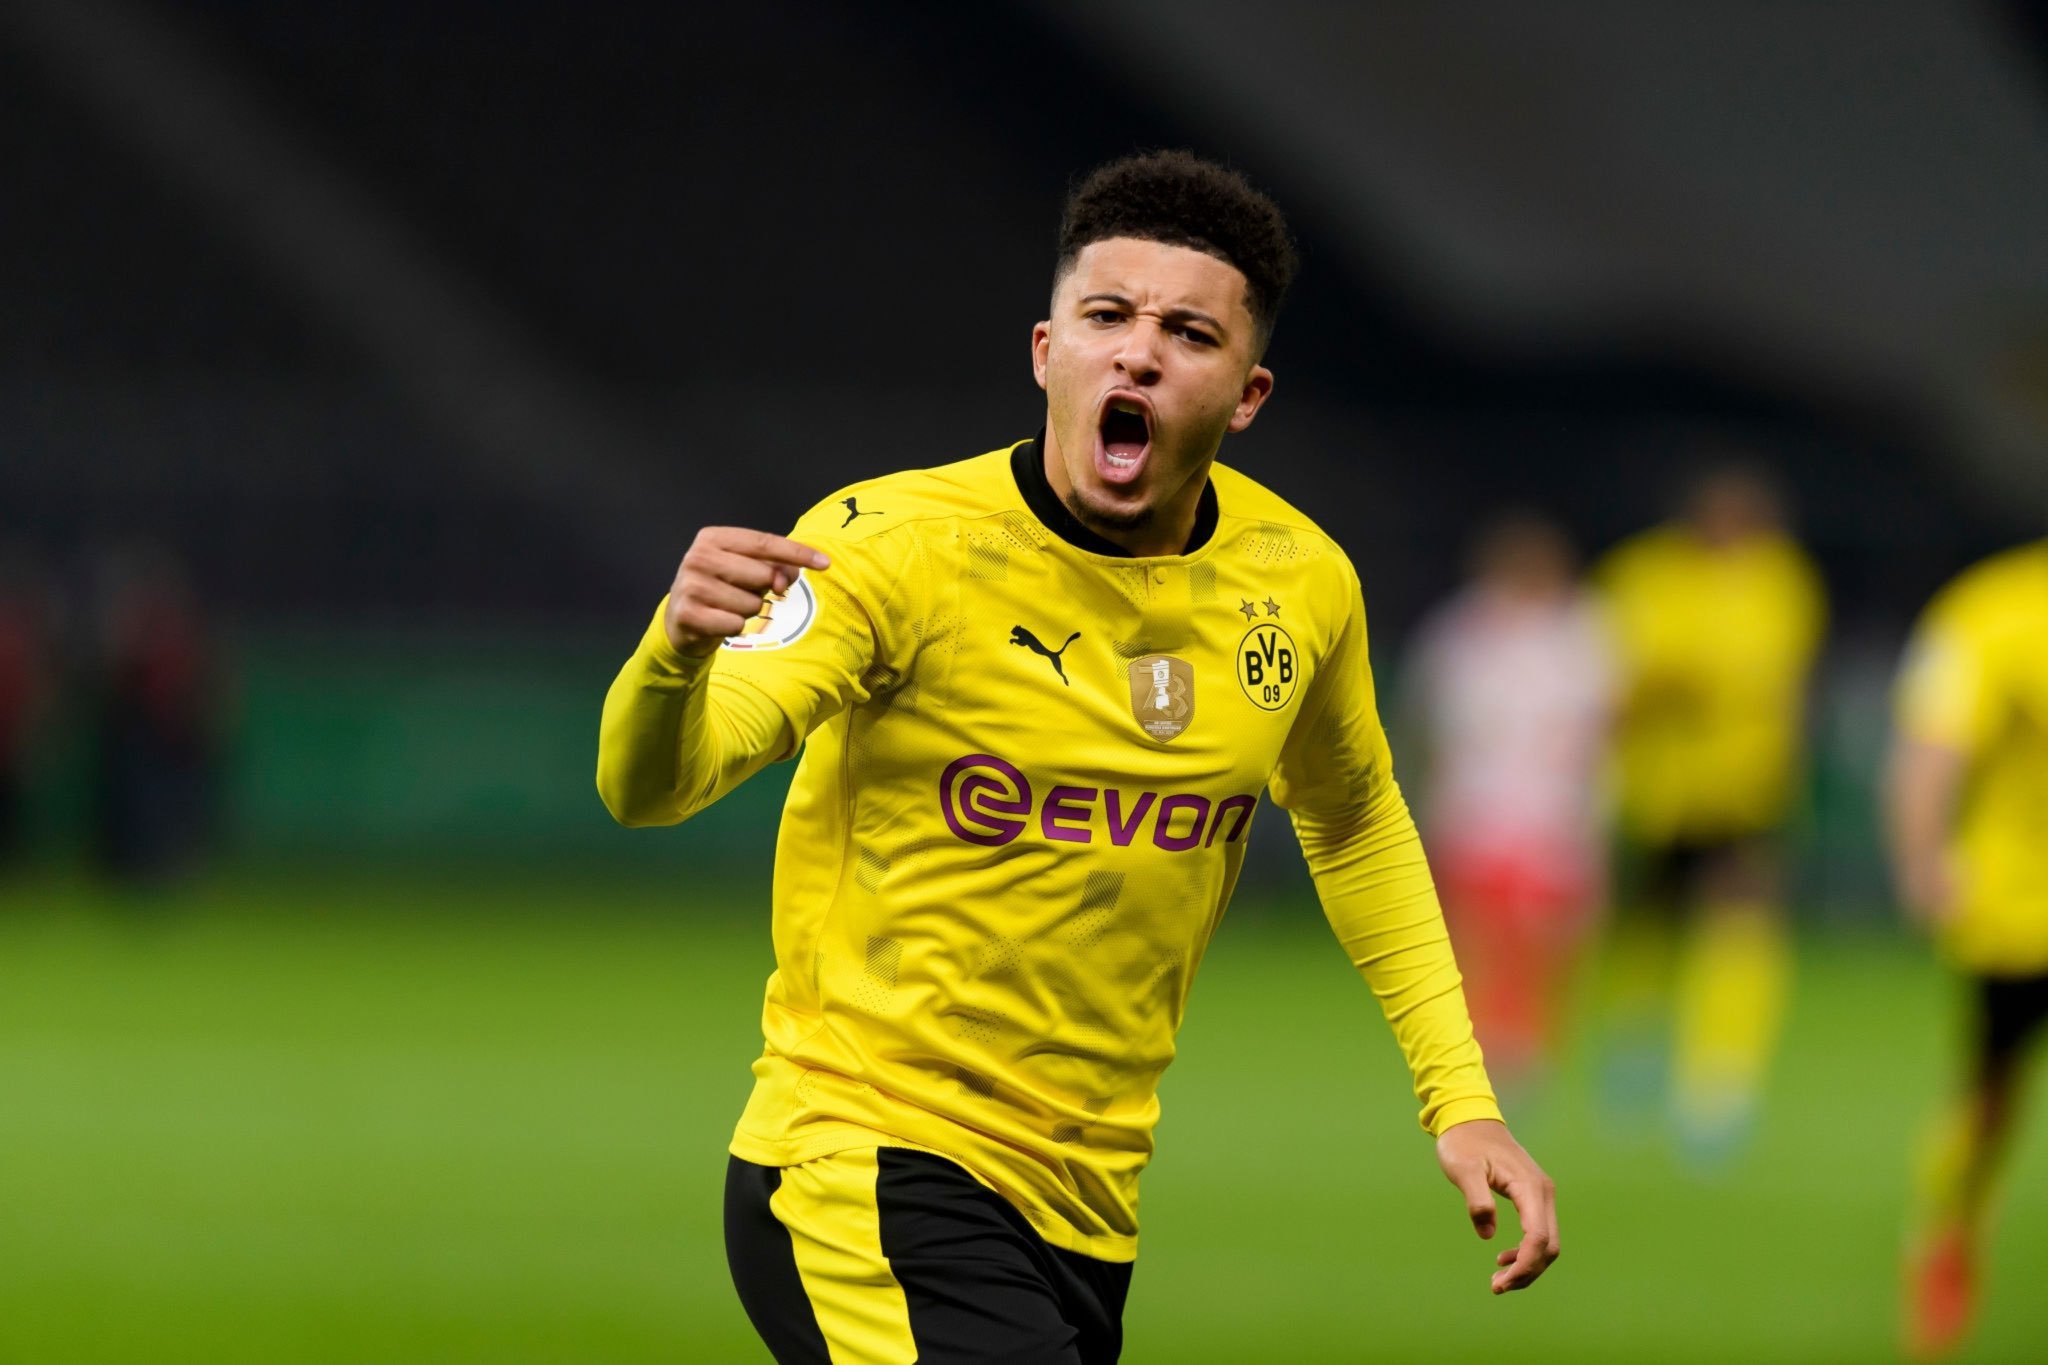 Sancho tỏa sáng ở Dortmund - RM trong bóng đá là gì?